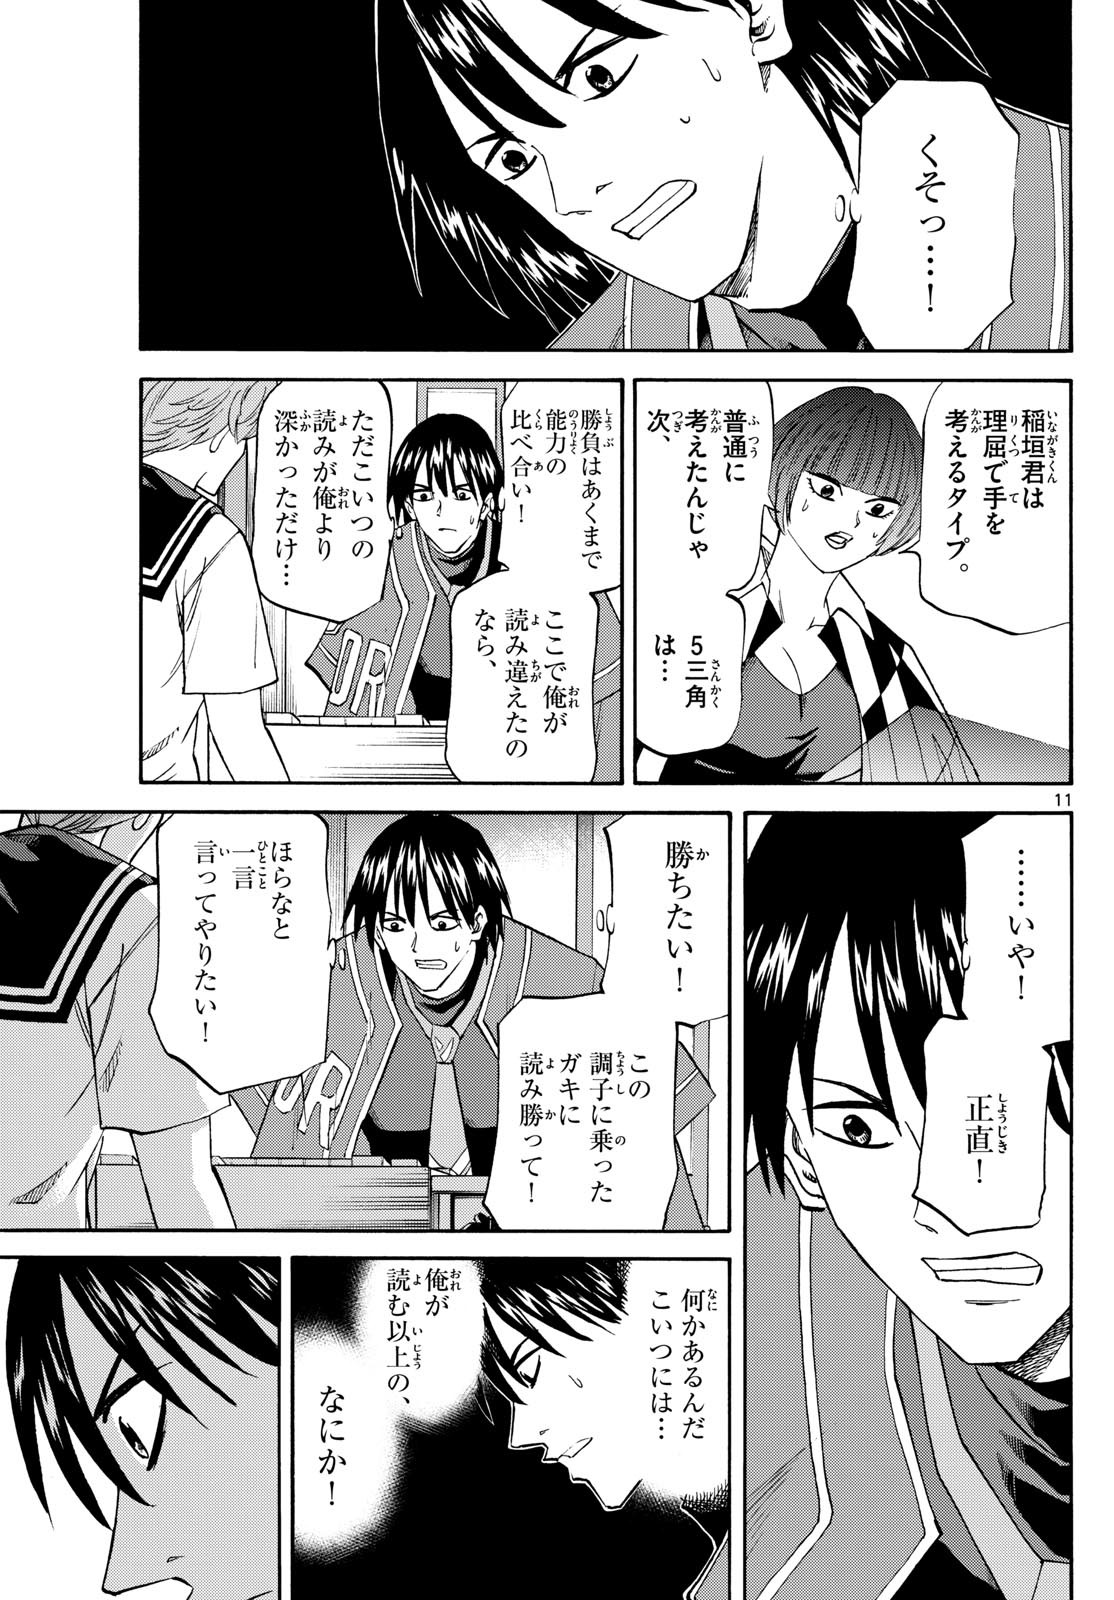 Ryu-to-Ichigo - Chapter 198 - Page 11